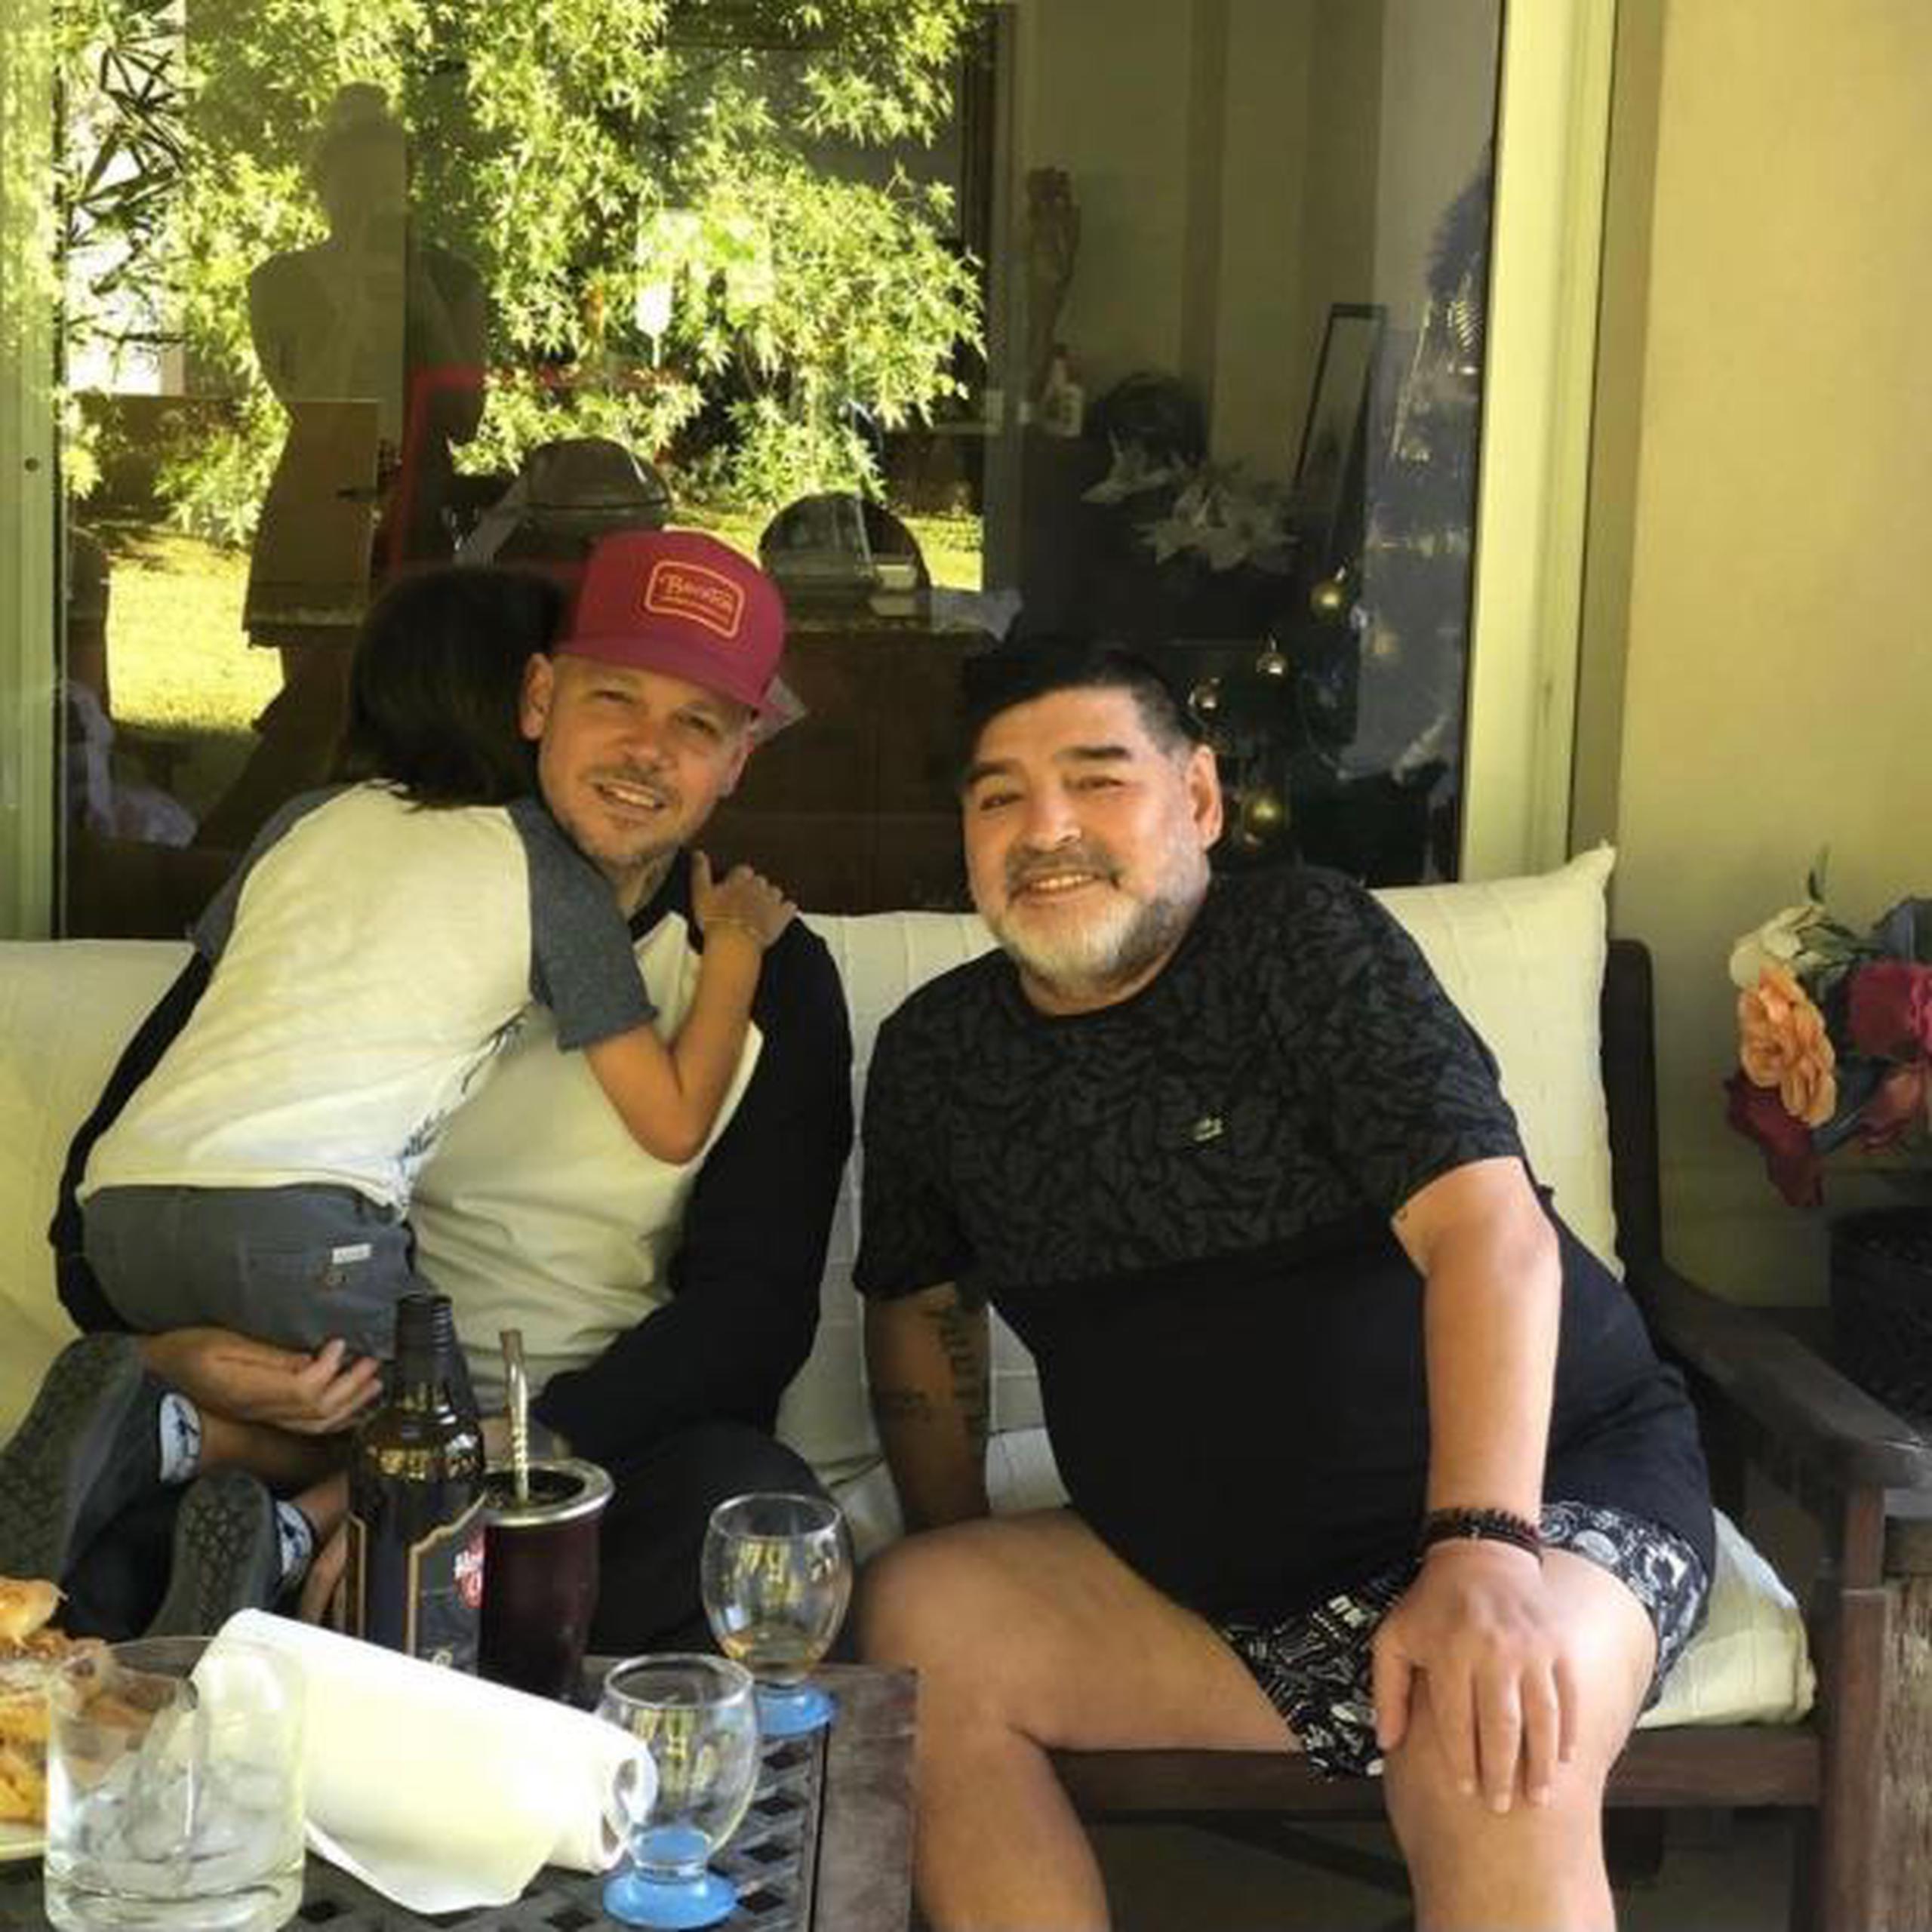 René Perez conoció al estelar futbolista Diego Maradona y llevó a su hijo Milo para que conociera al legendario jugador. (Instagram)